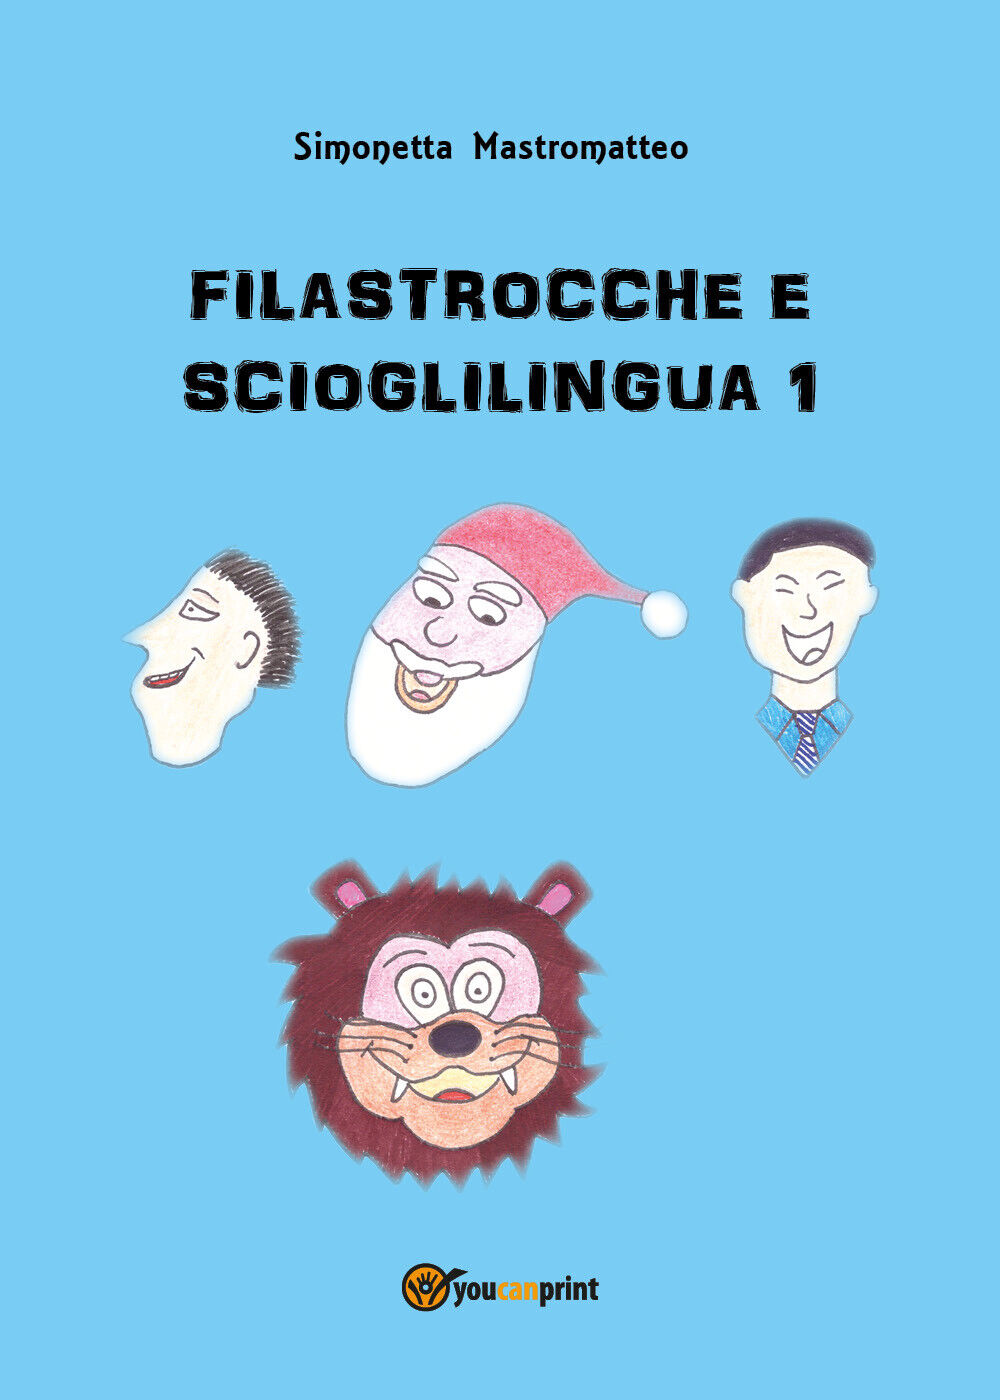  Filastrocche e scioglilingua 1 - Simonetta Mastromatteo,  2018,  Youcanprint